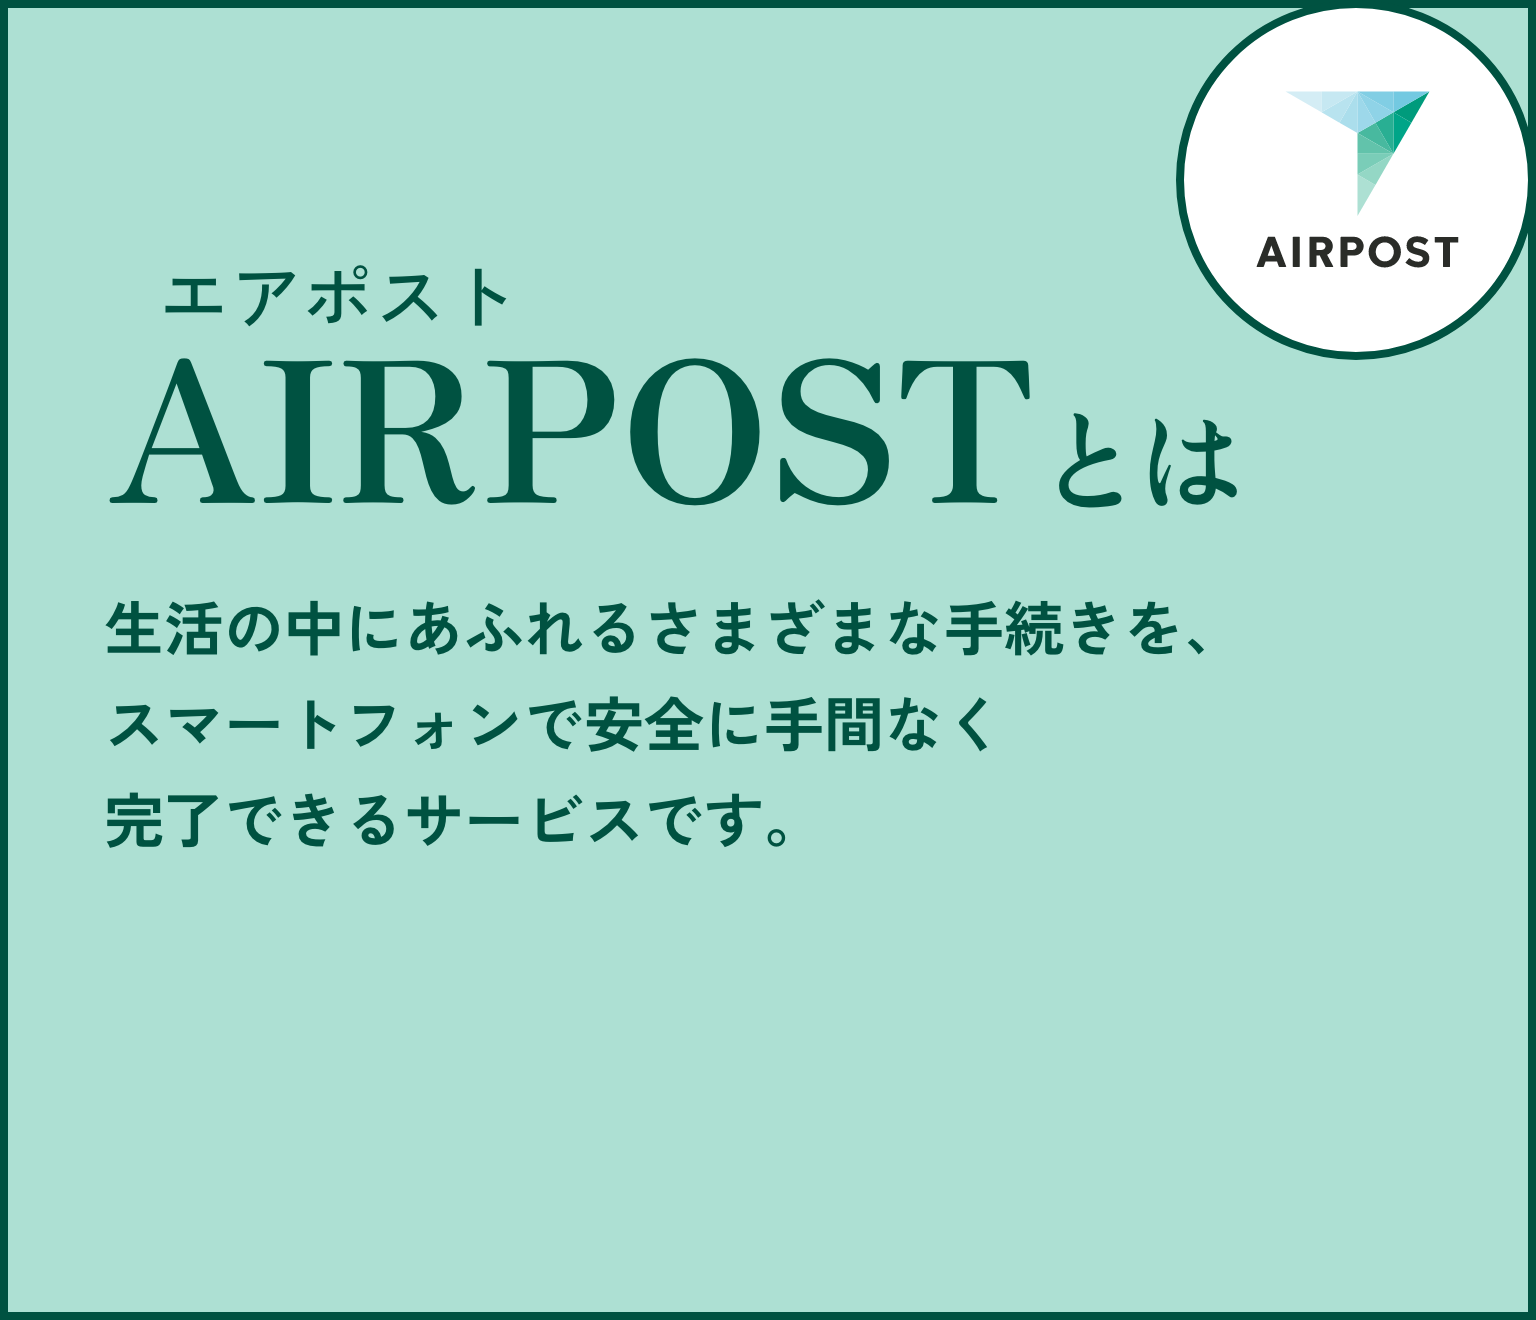 AIRPOSTとは 生活の中にあふれるさまざまな手続きを、スマートフォンで安全に手間なく完了できるサービスです。